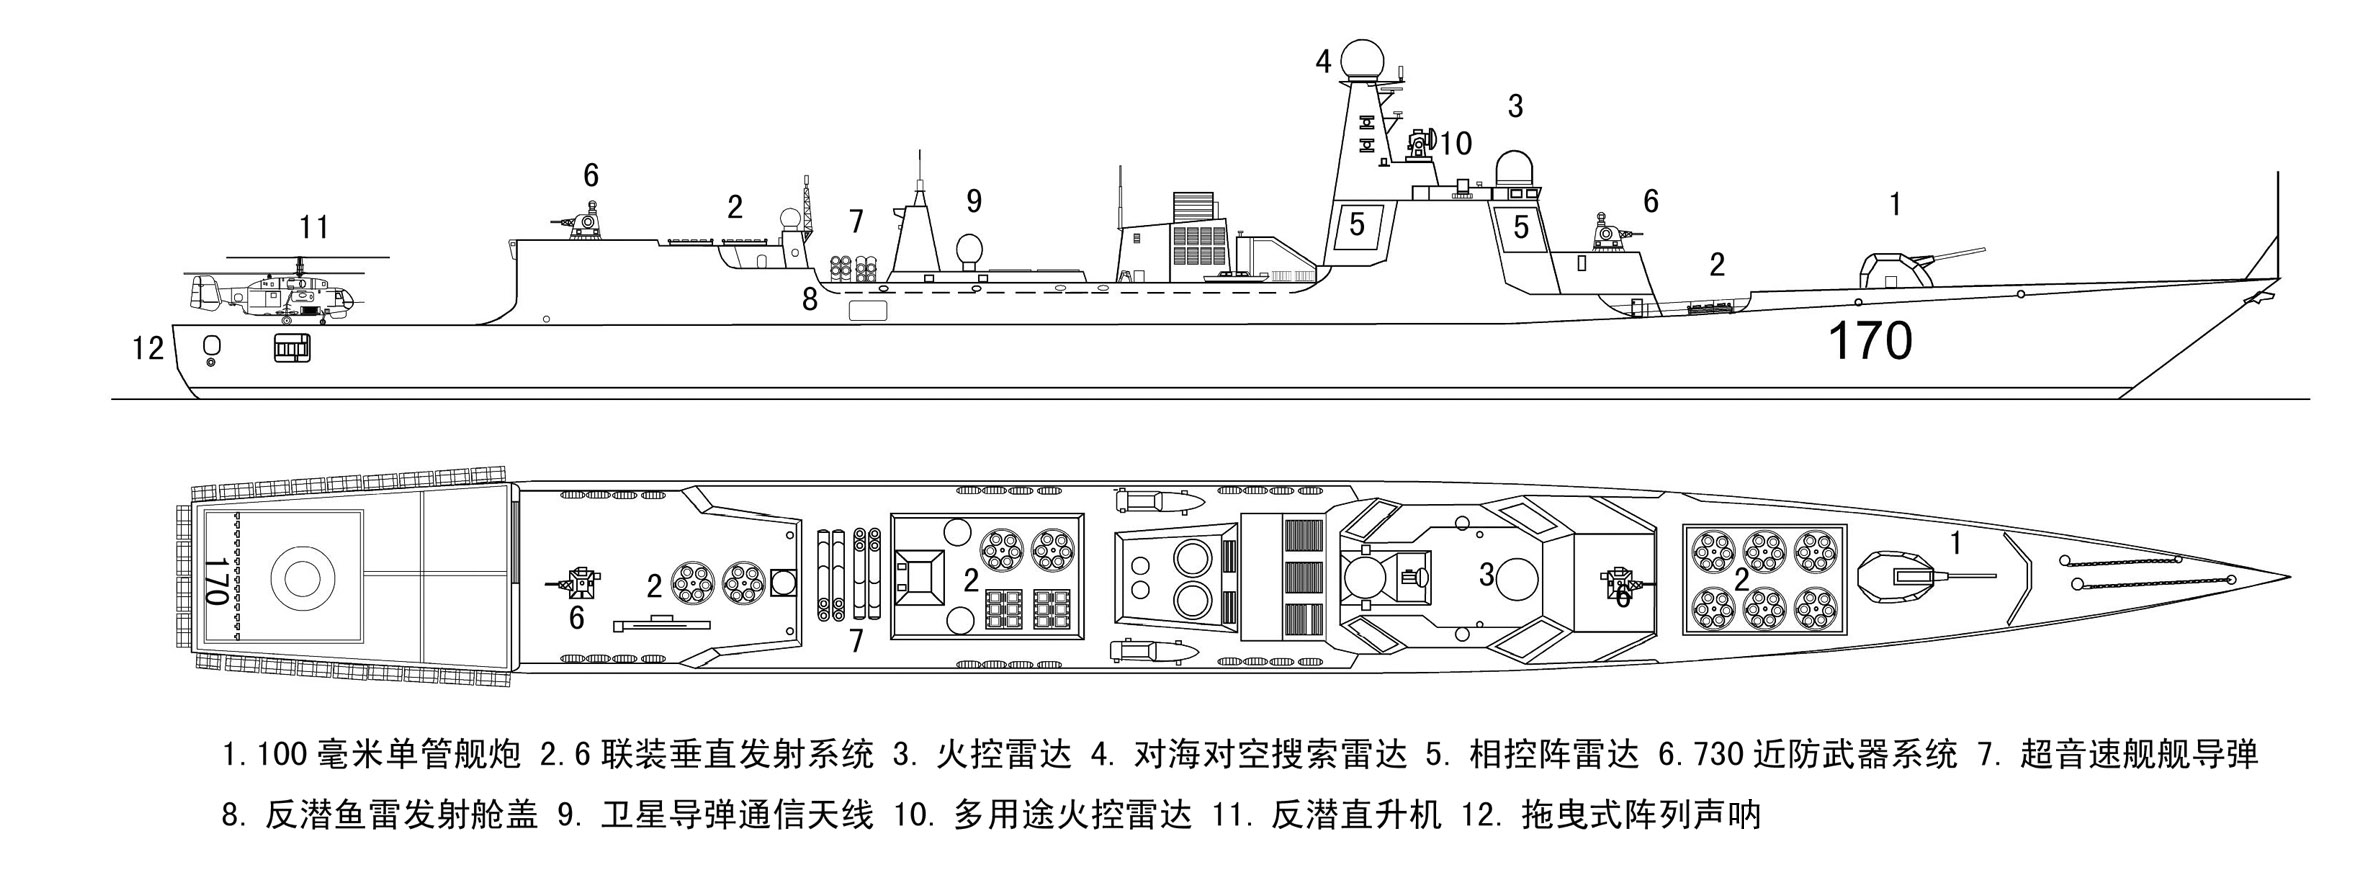 中国新型主力战舰